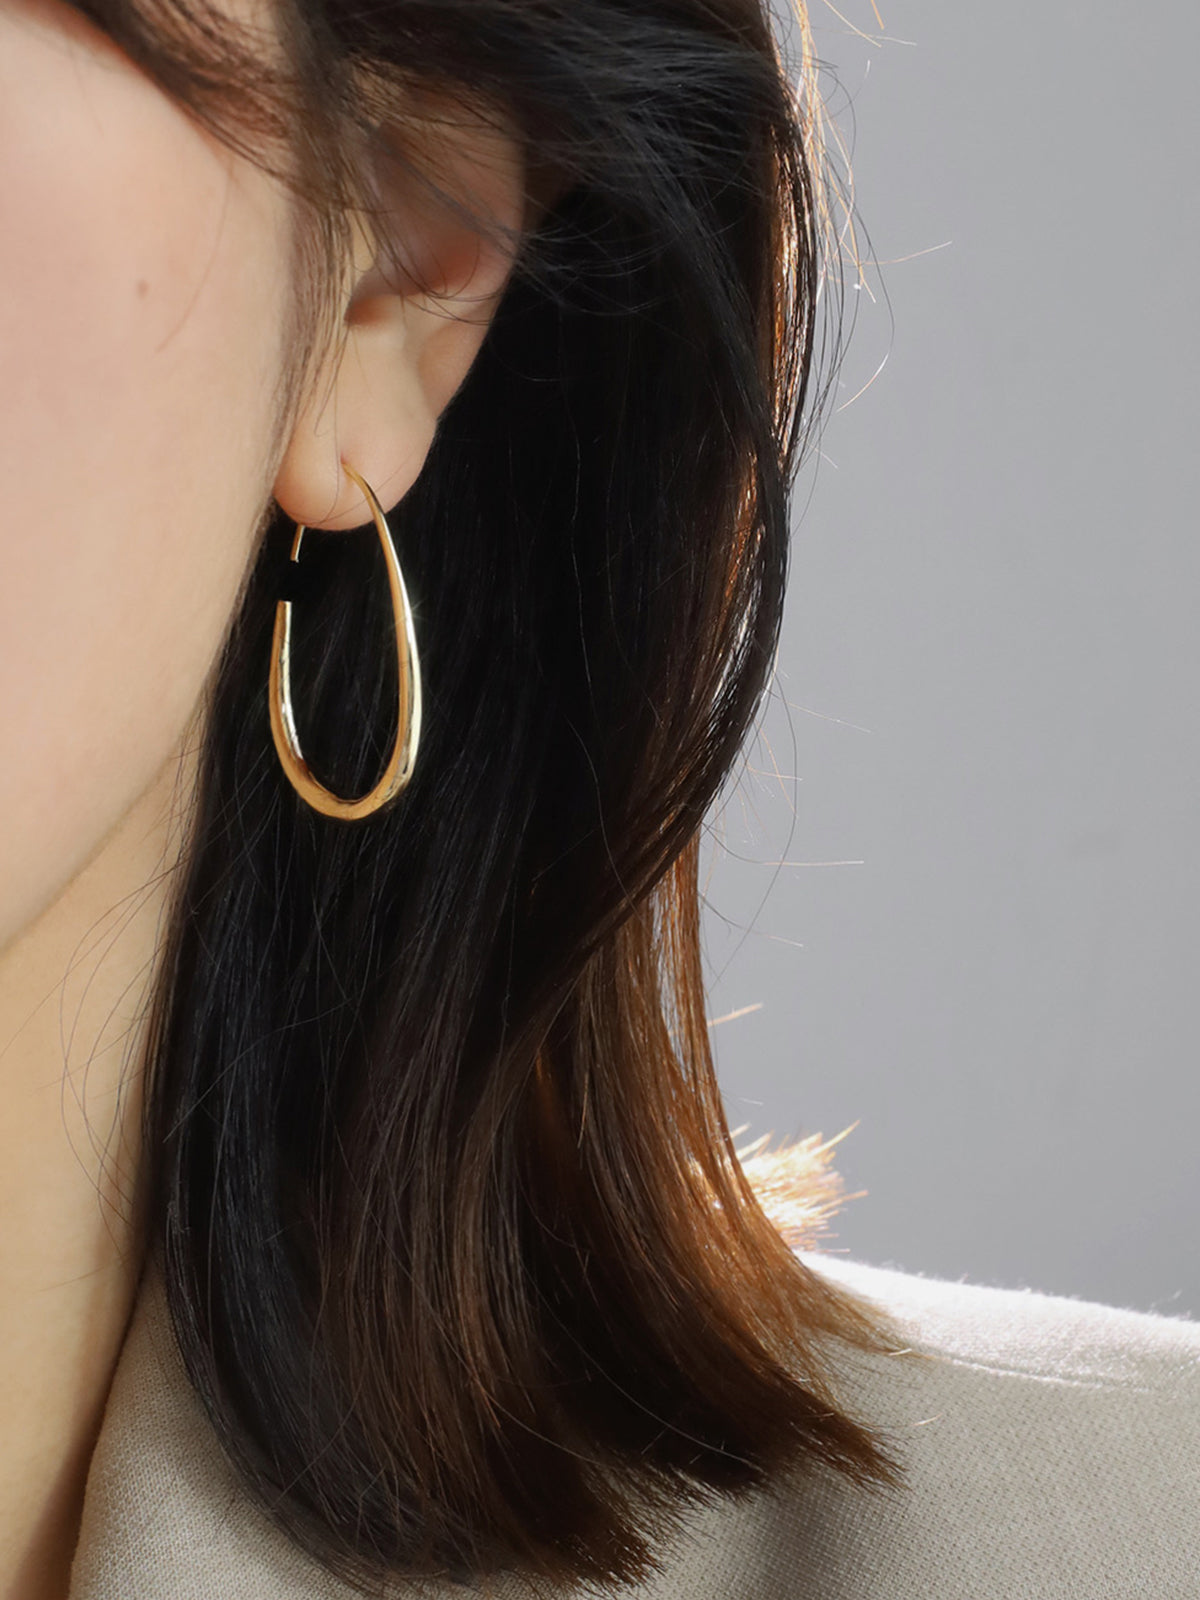 Water drop gold earrings French style chic temperament earrings new earrings women e009